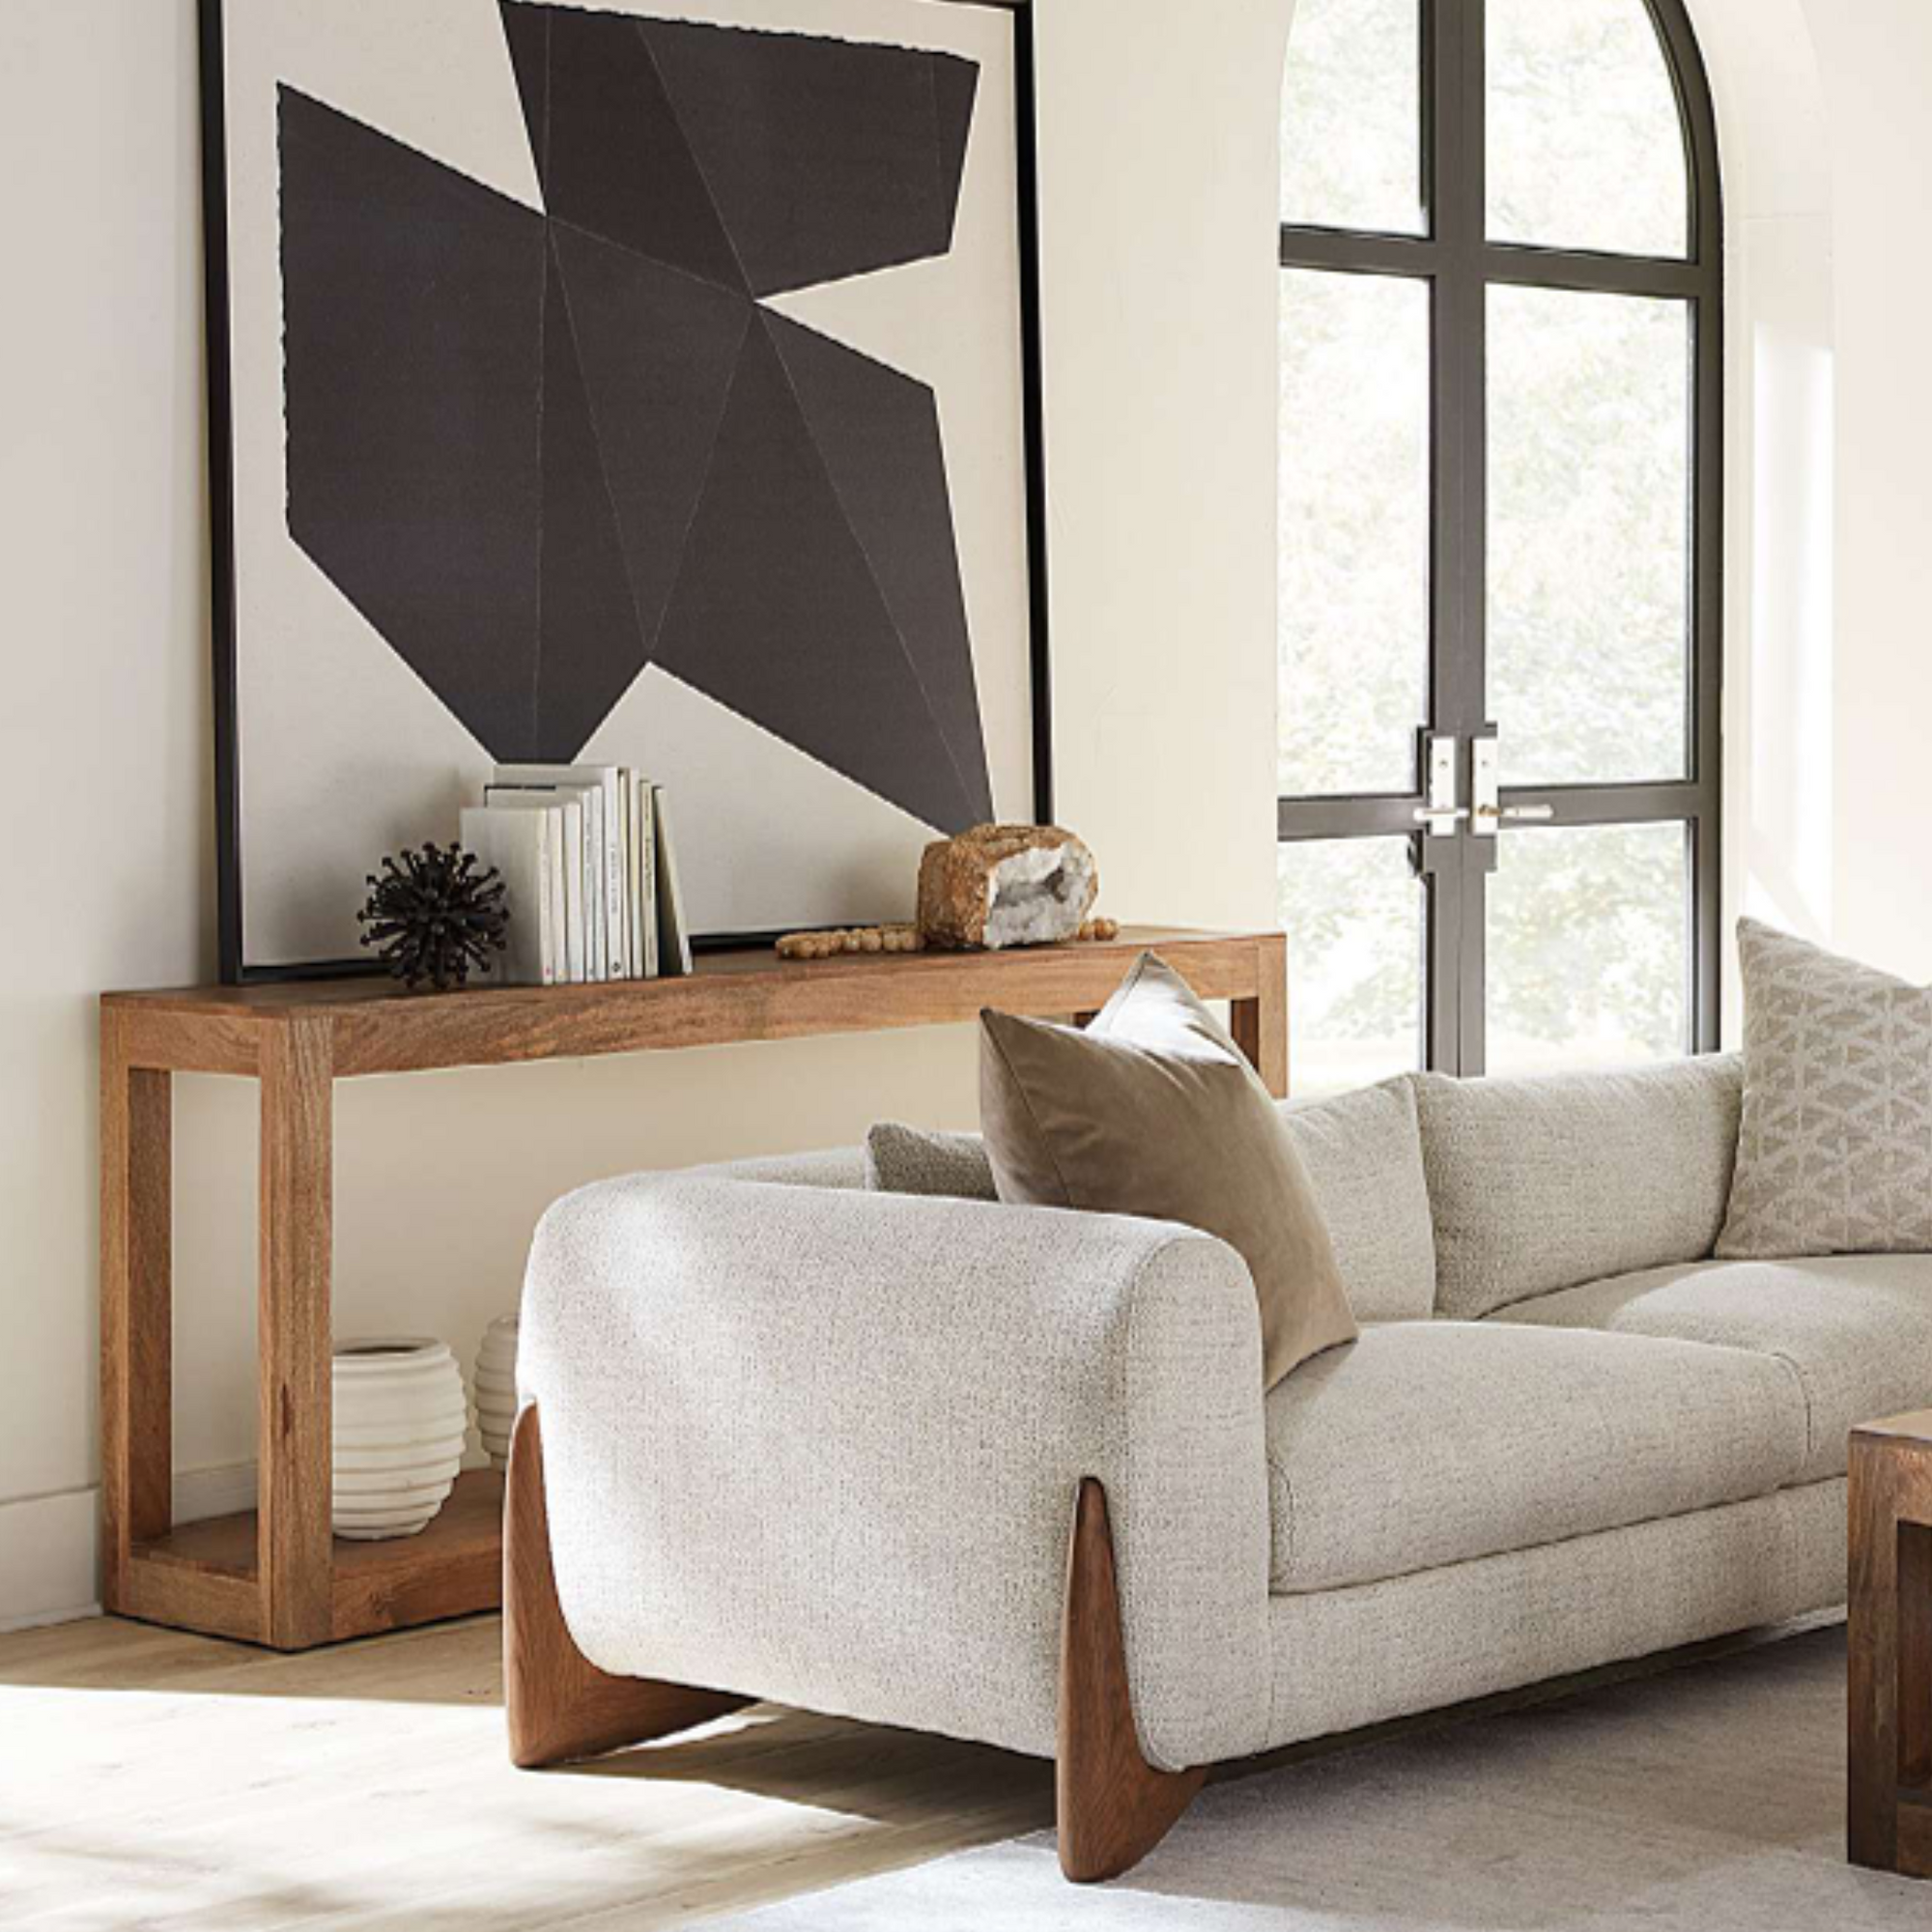 Alder & Tweed furniture